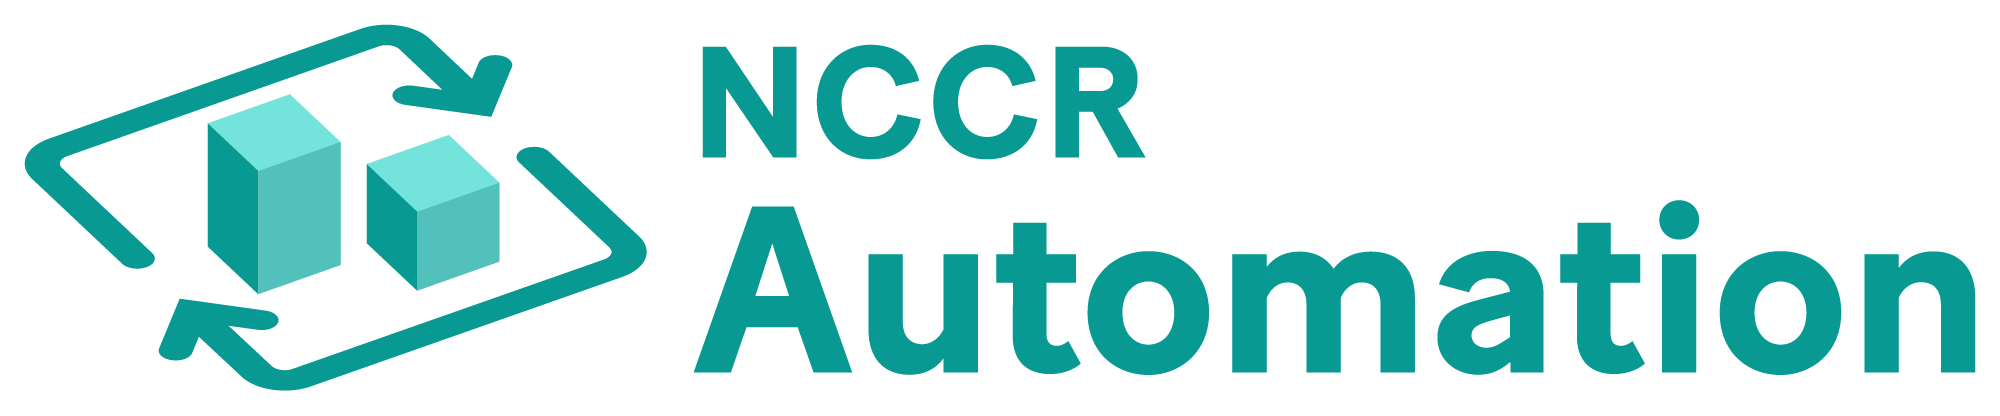 NCCR-Automation